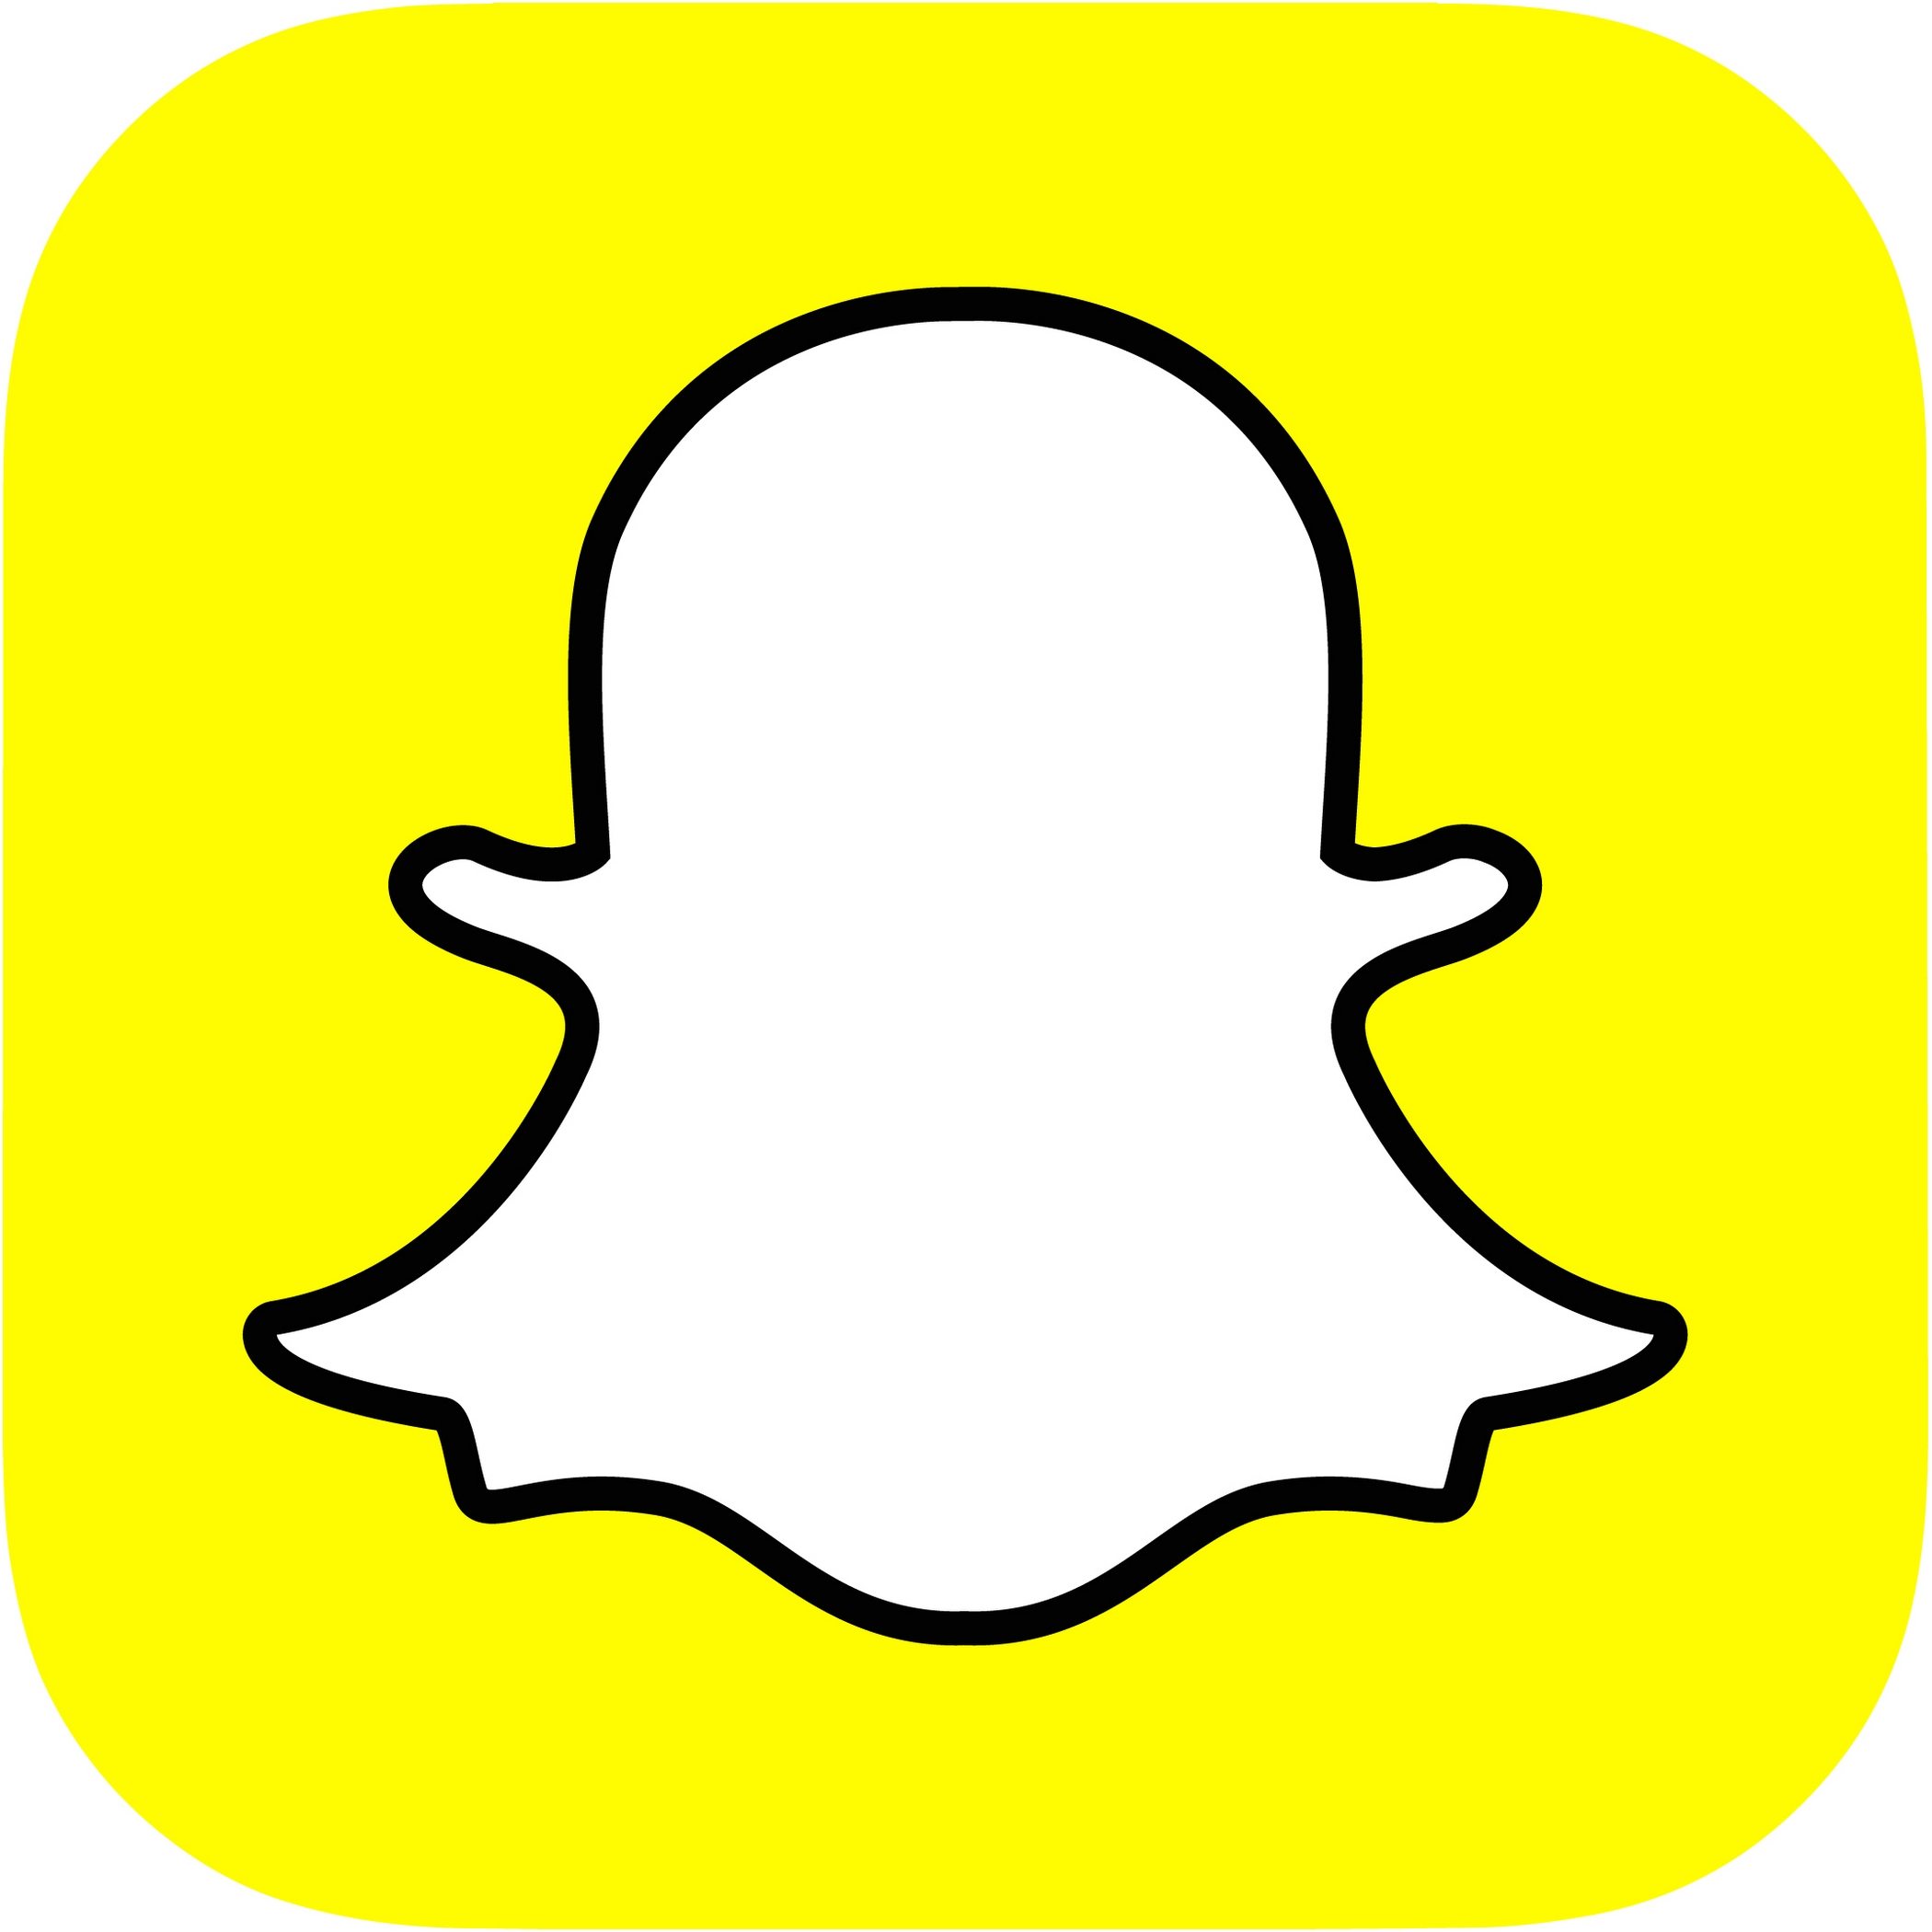 Snapchat logo drawing clipart